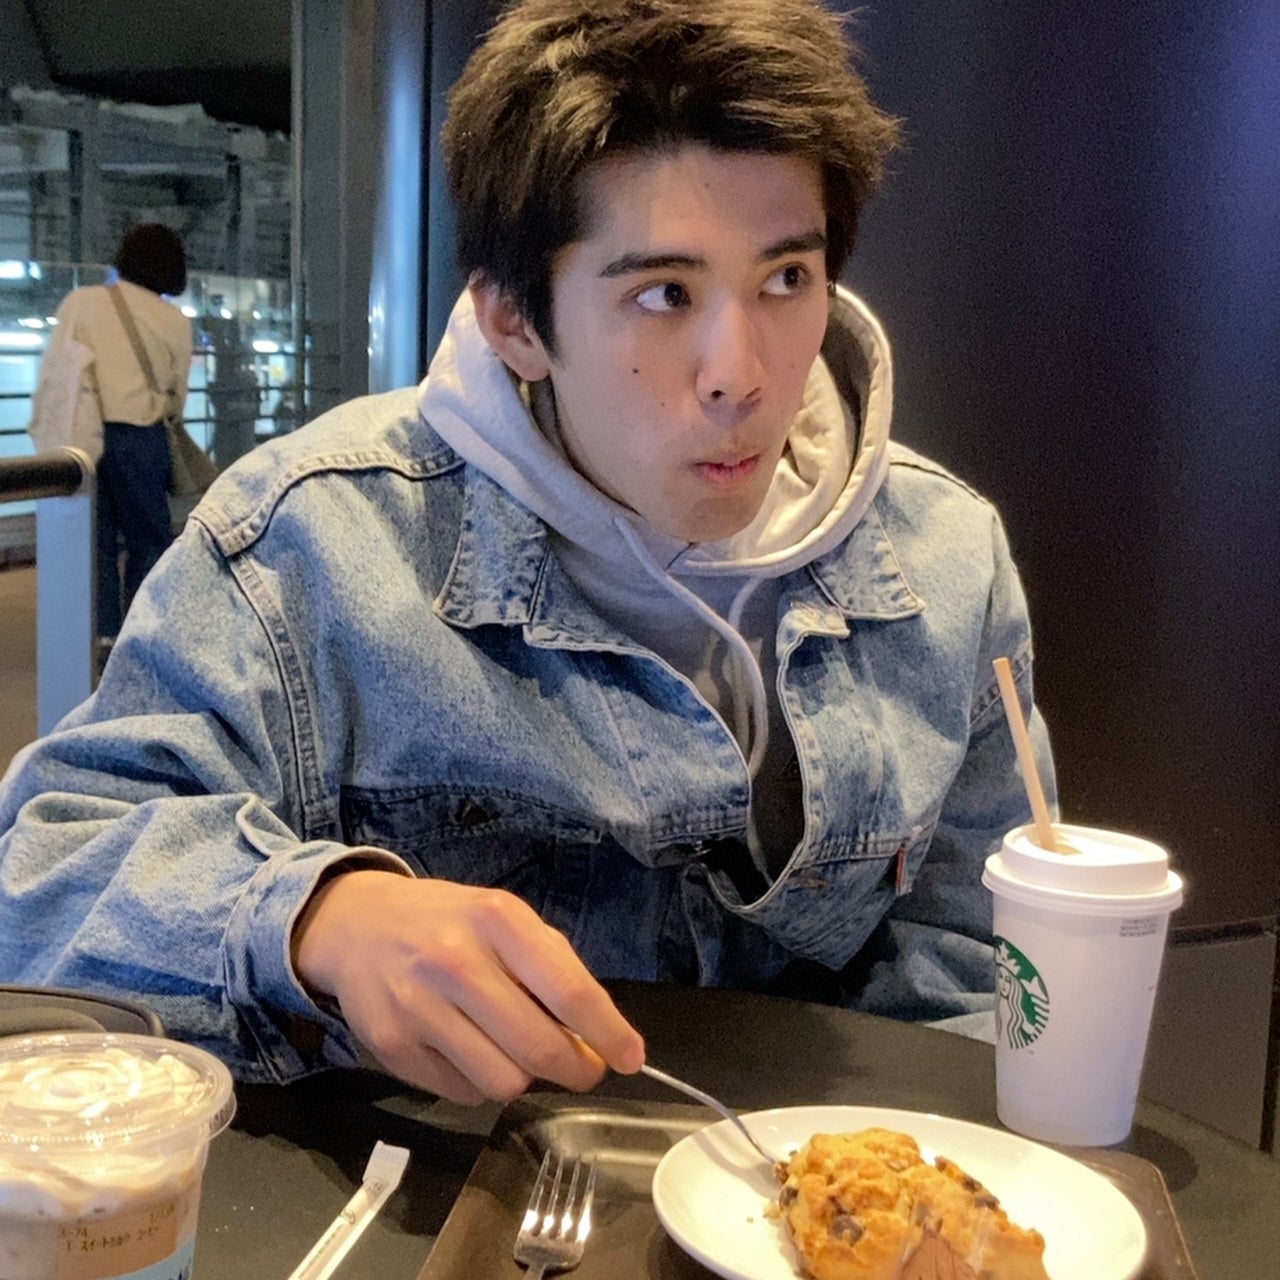 Kotaro Inai eating scones at Starbucks